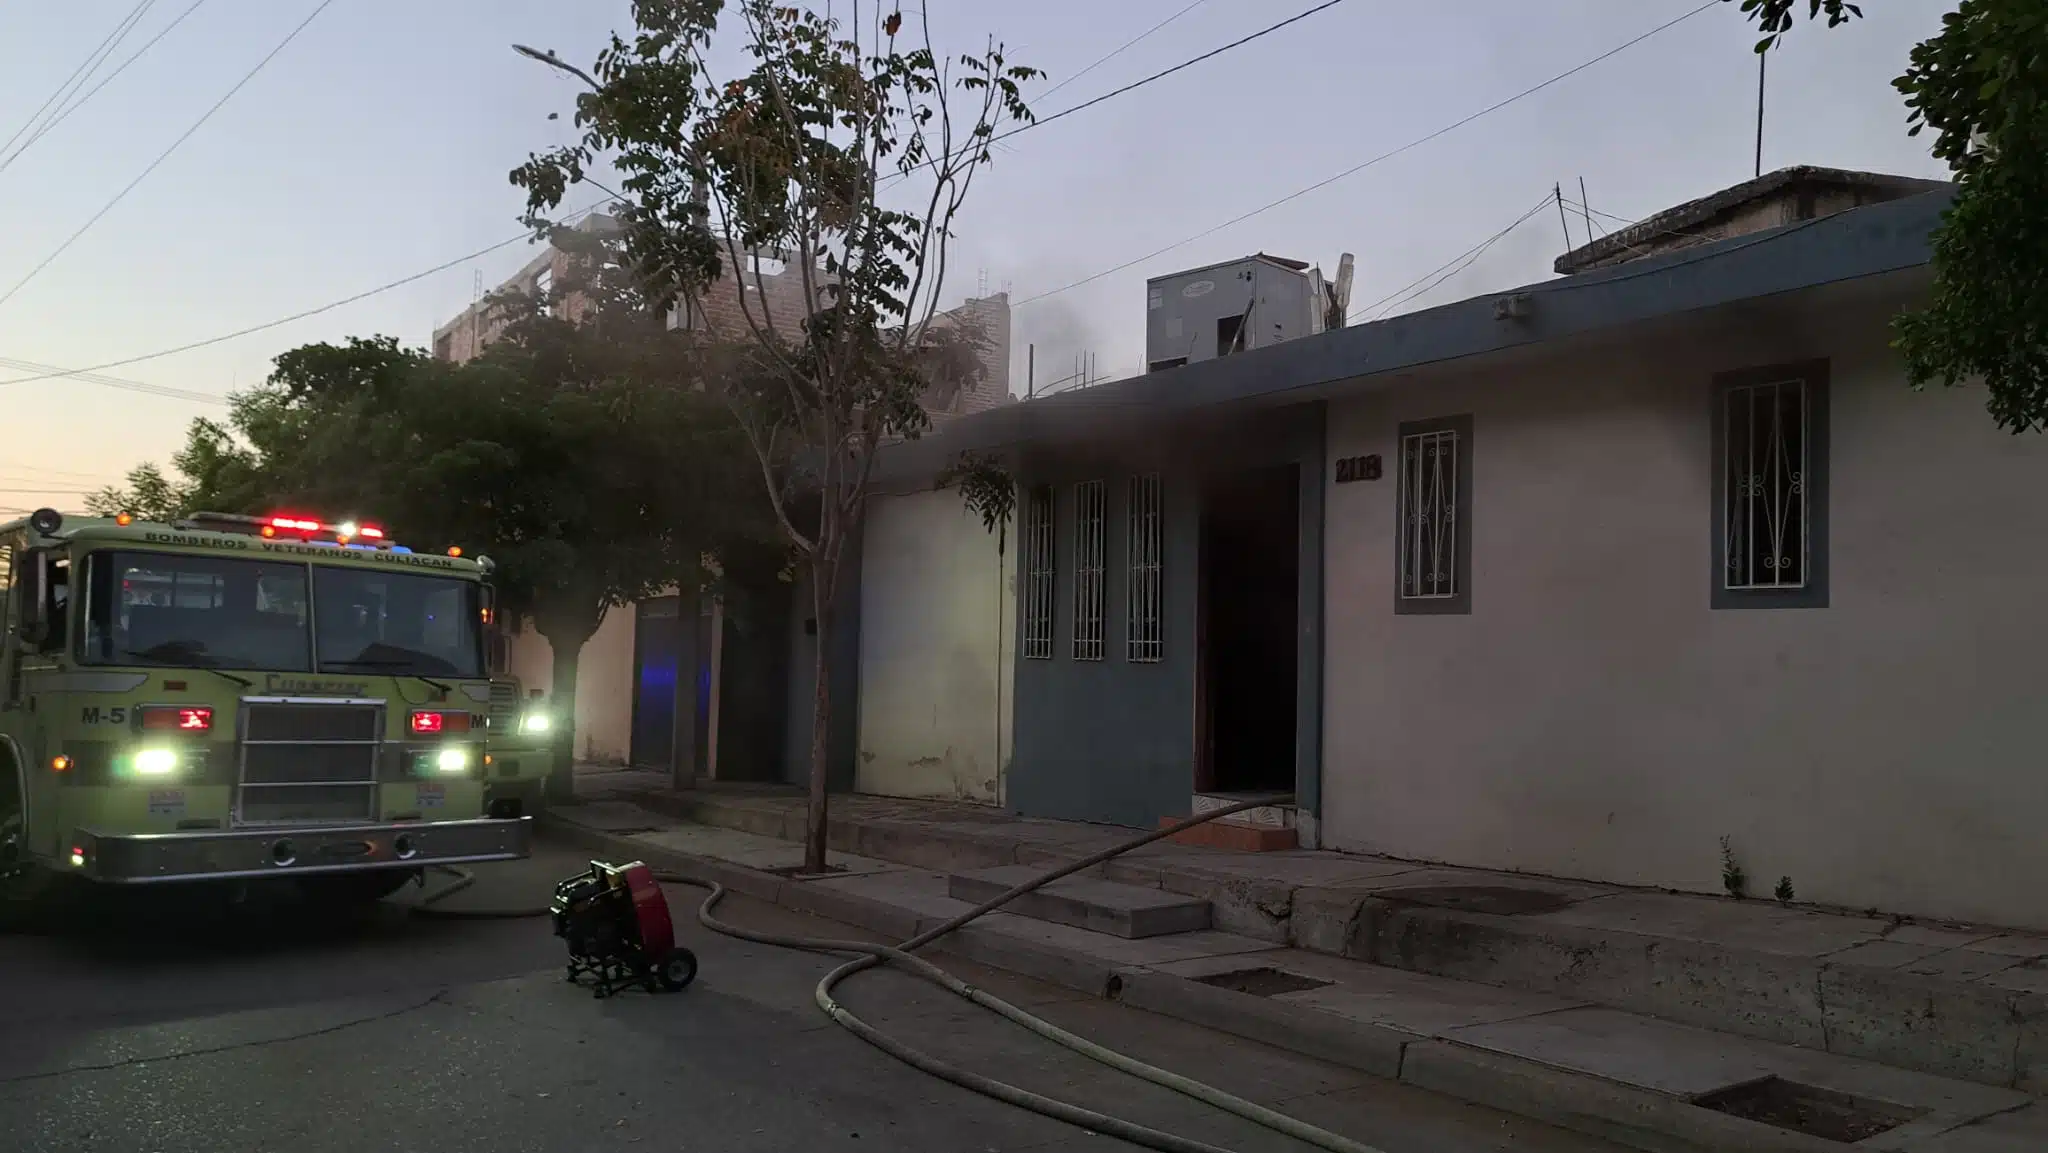 Bomberos Culiacán controlando el incendio en el estudio de grabación